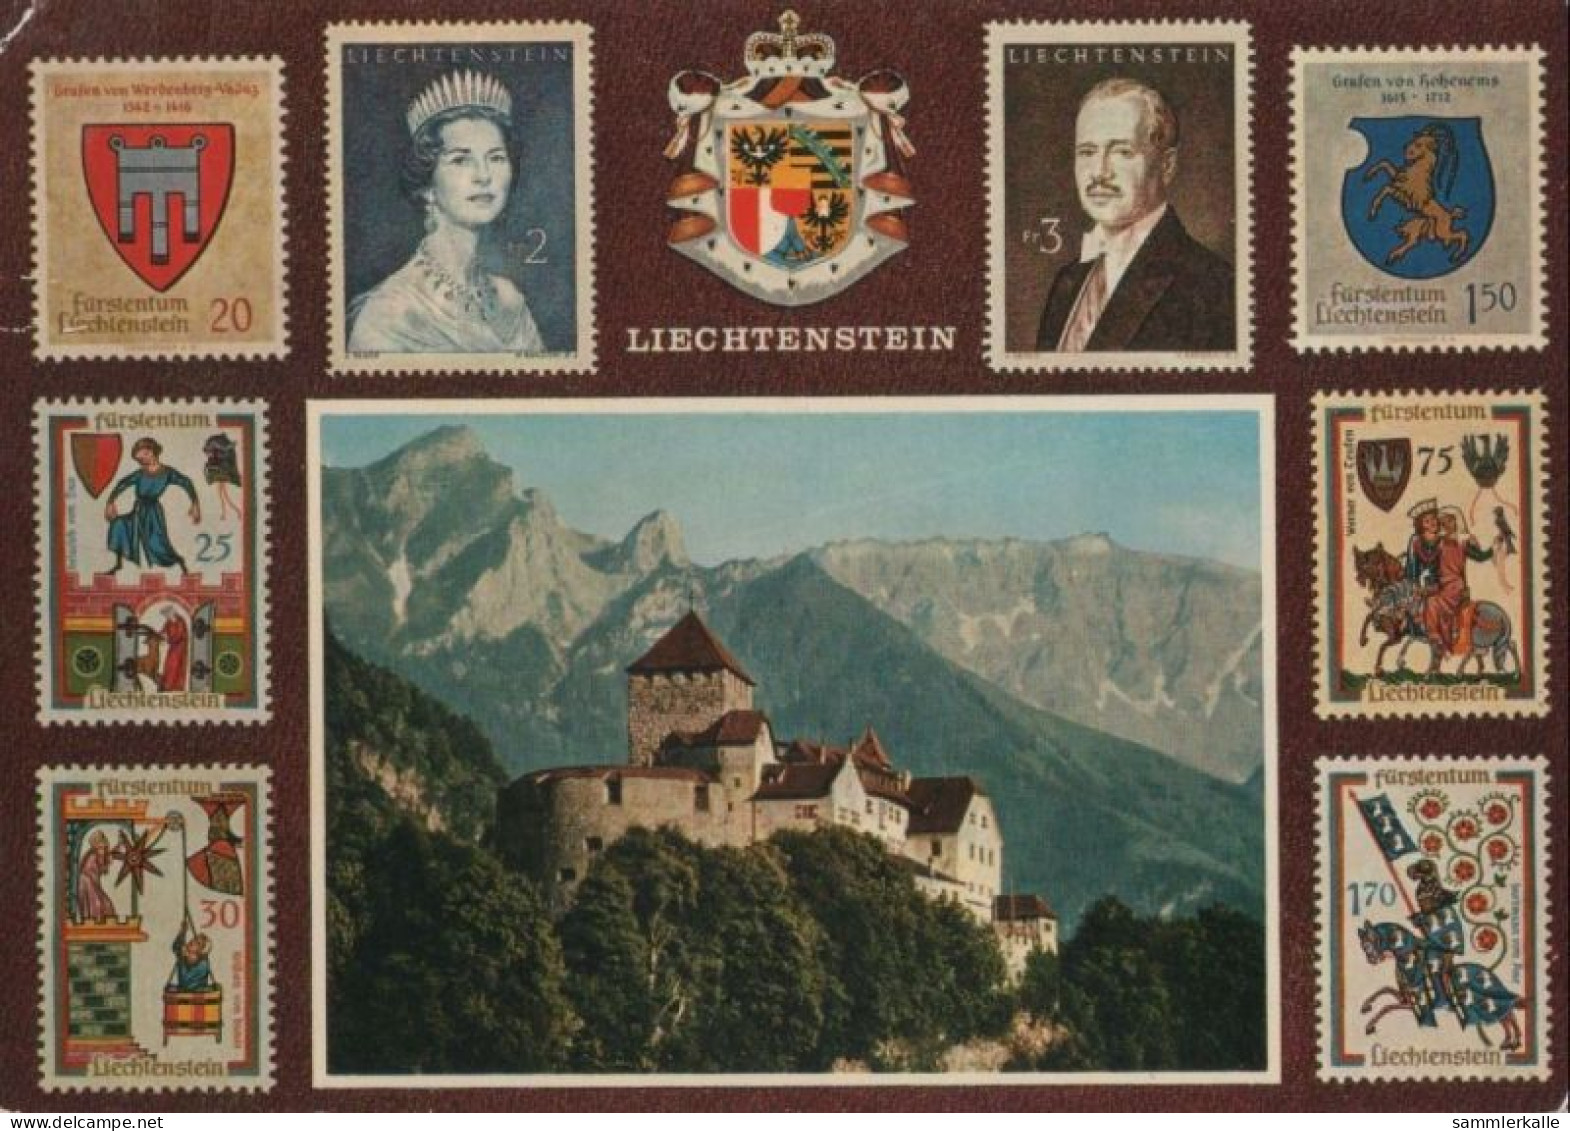 102211 - Liechtenstein - Liechtenstein - Ca. 1975 - Liechtenstein